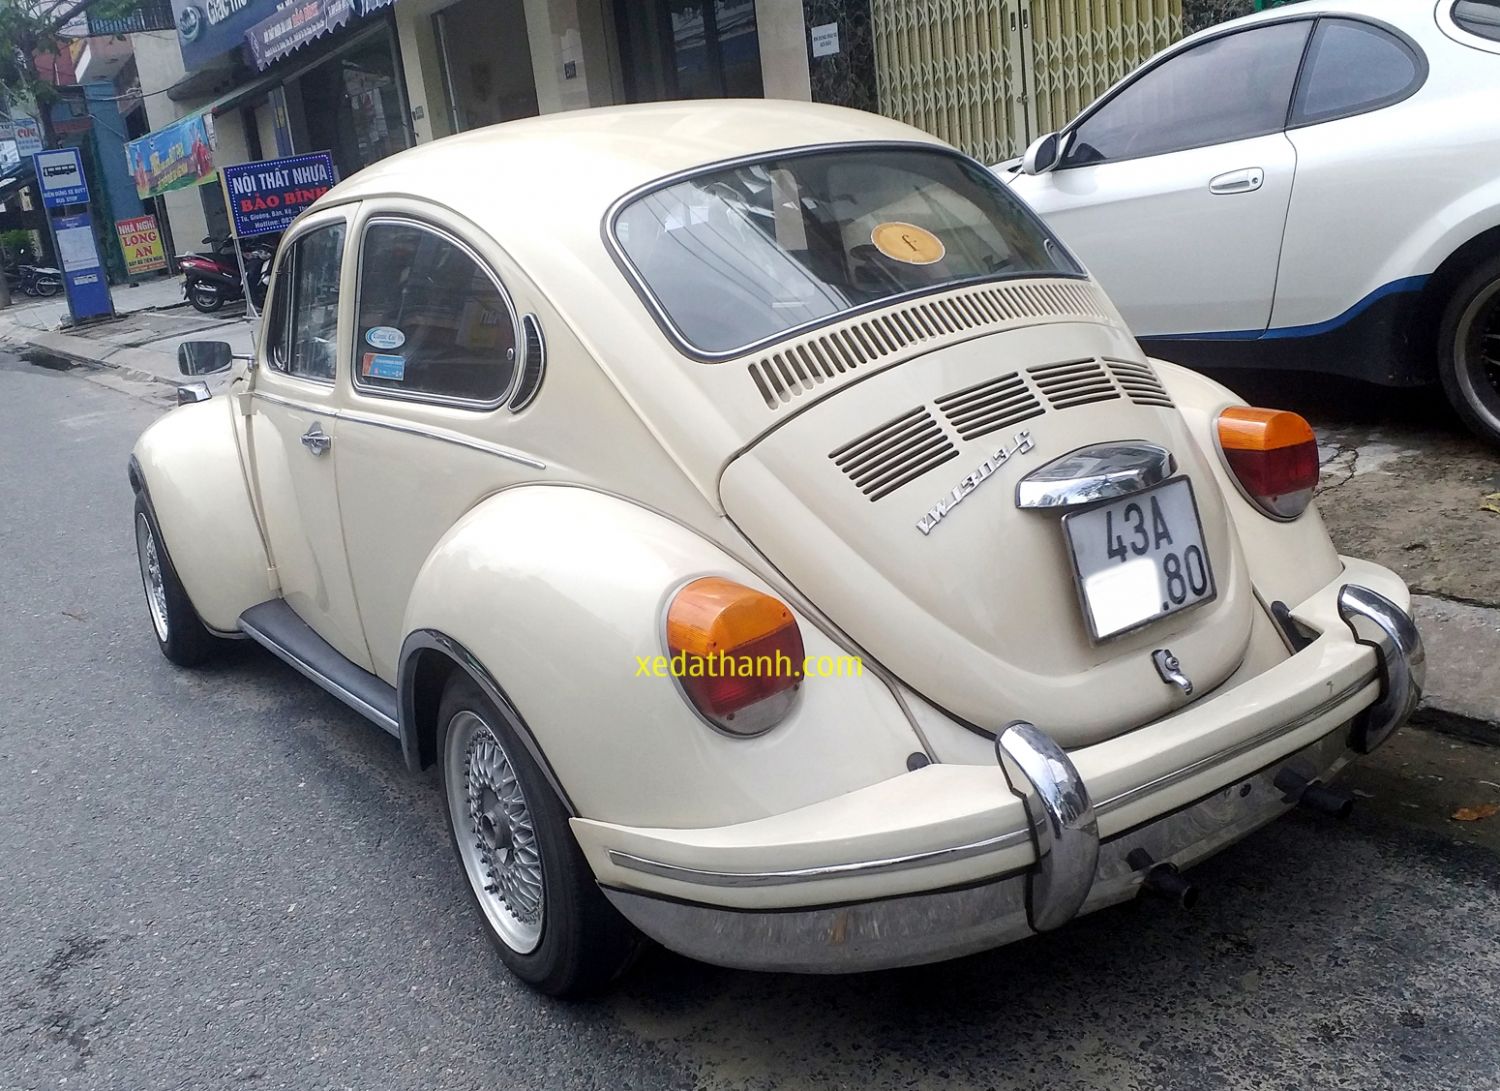 Volkswagen Beetle Dune cũ, Xe con bọ cổ giá rẻ, Giá xe Volkswagen Beetle Dune, Xe Volkswagen